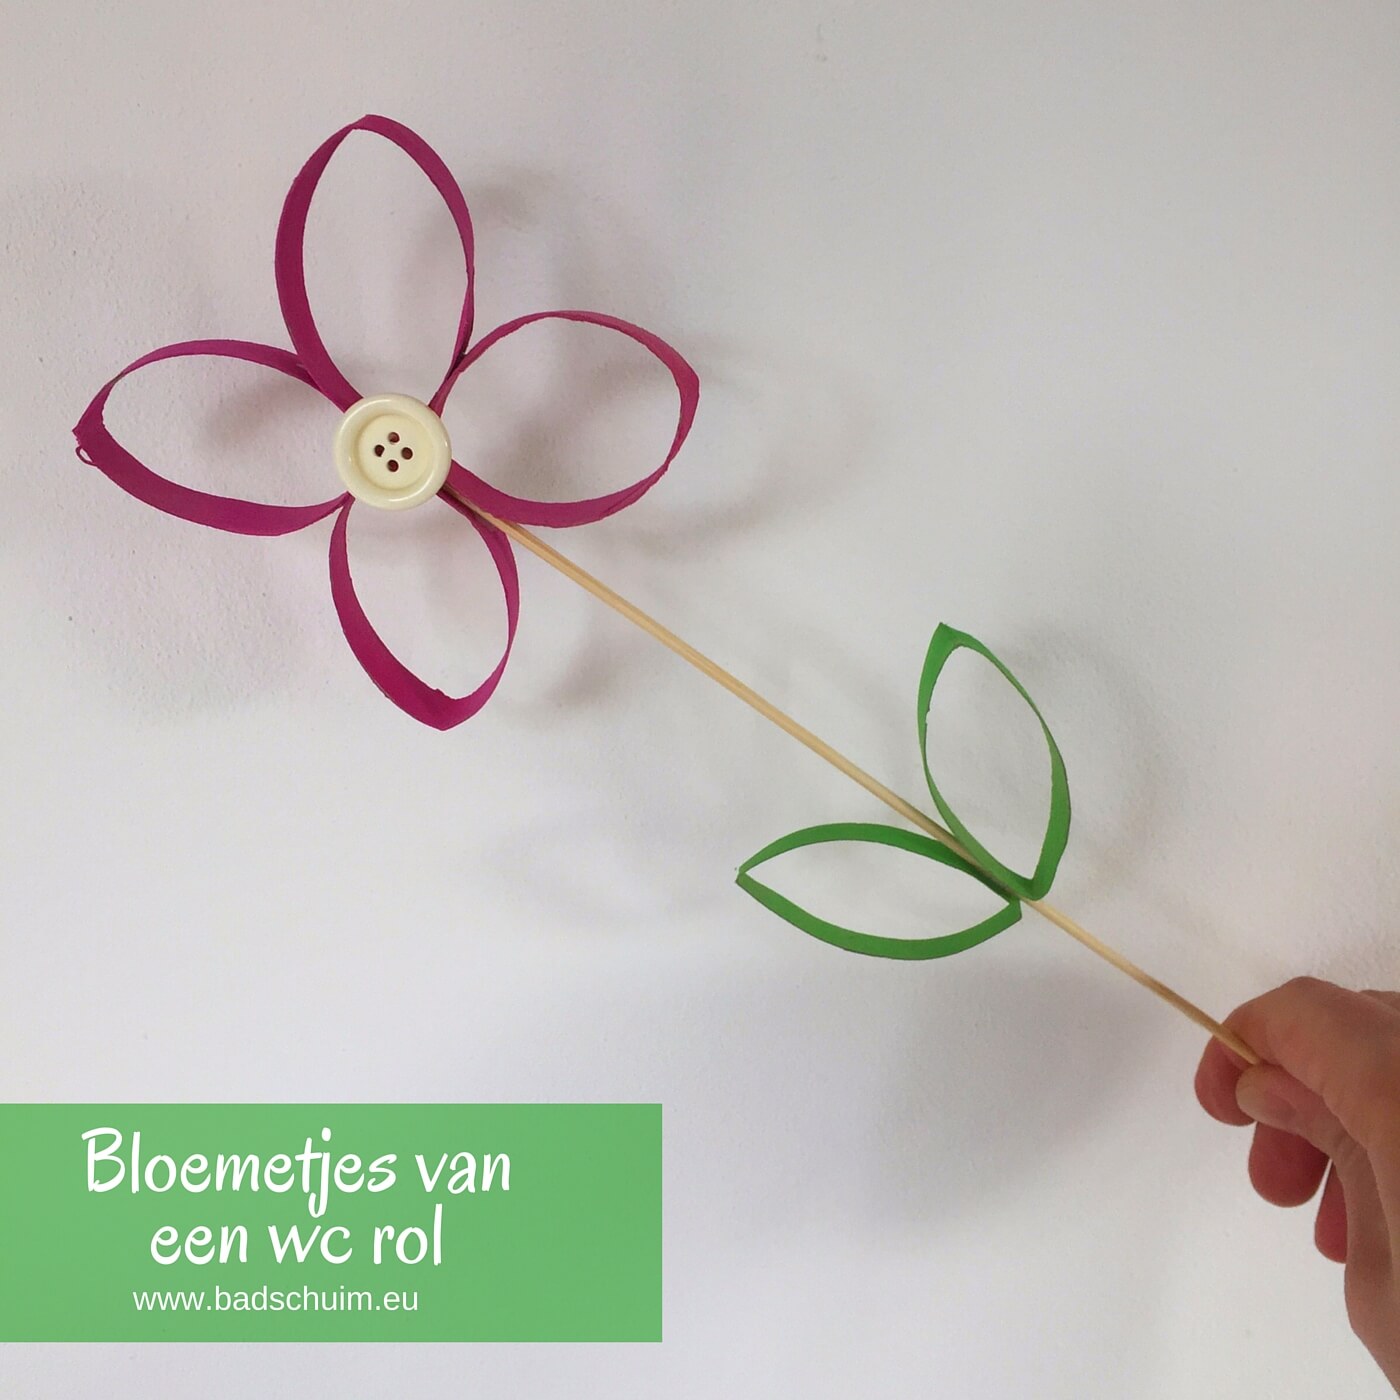 Geef eens bloemetjes van wc rolletjes cadeau. Simpel te maken (ook met kids) met dit DIY foto stappenplan. Eigenlijk zo leuk dat je ze zelf wilt houden!